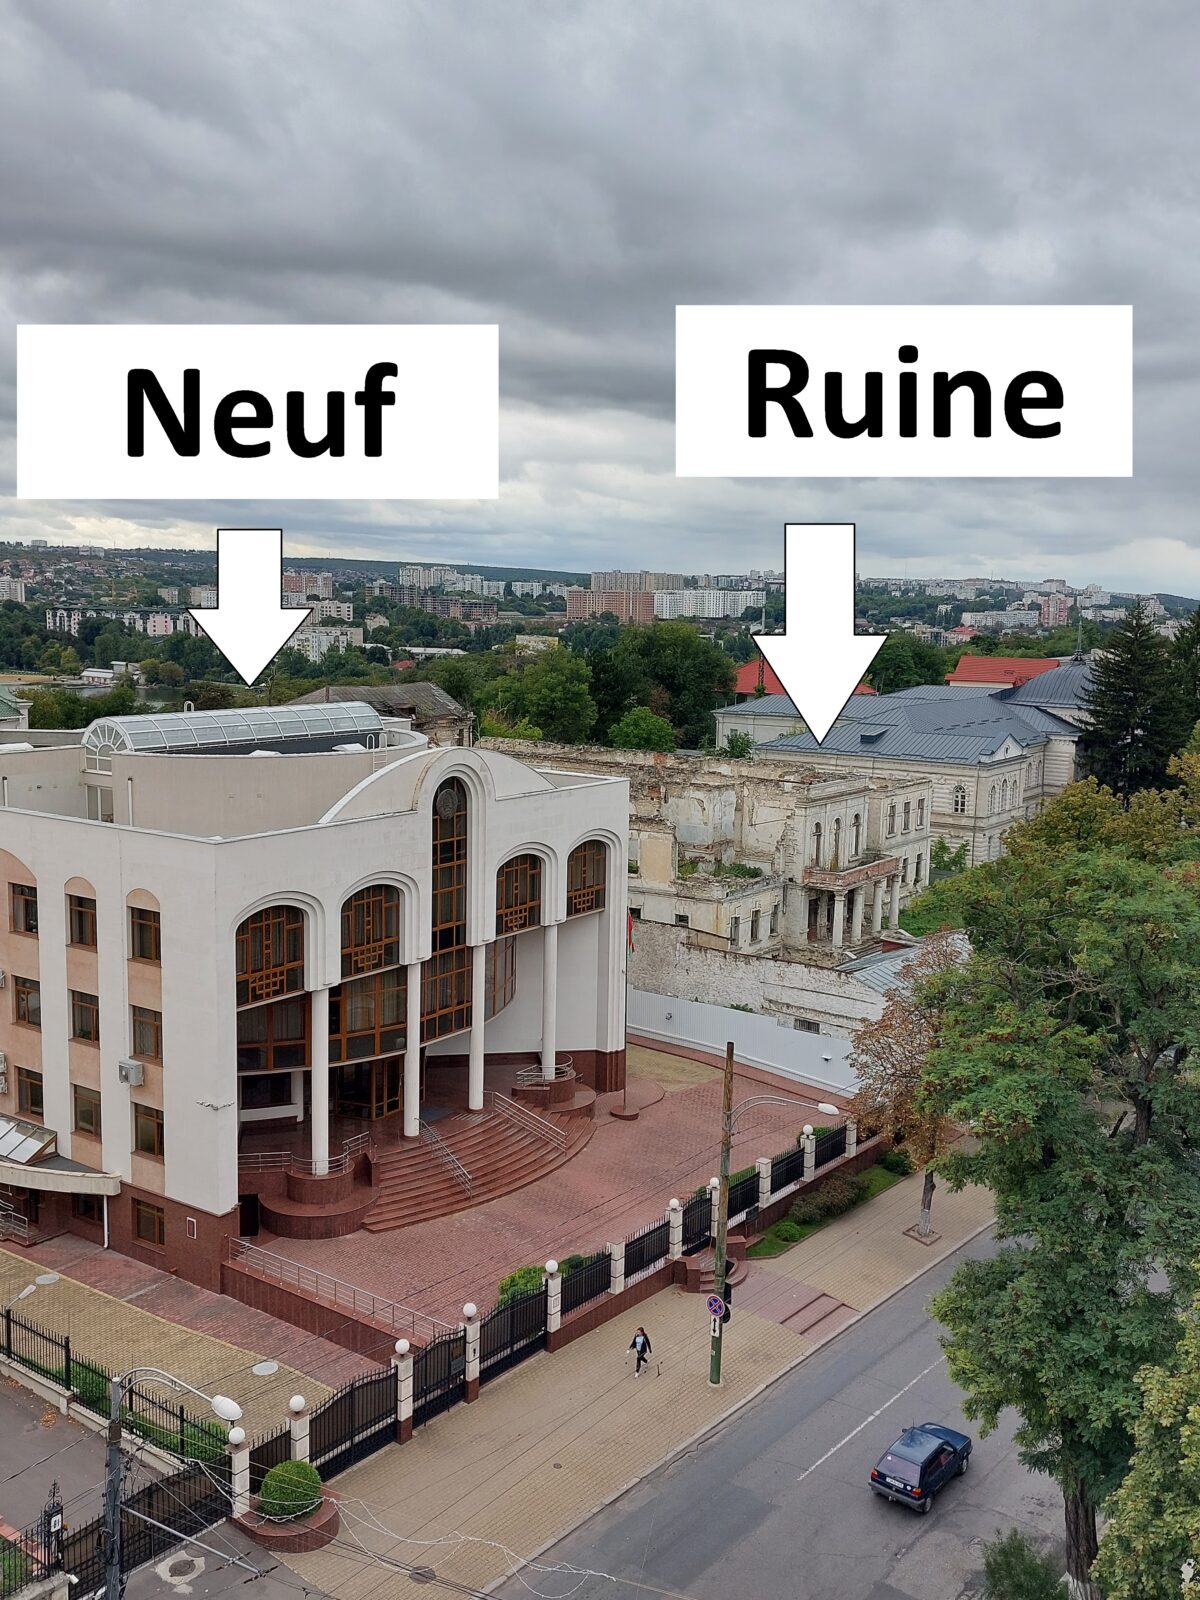 Visiter Chișinău et son architecture communiste